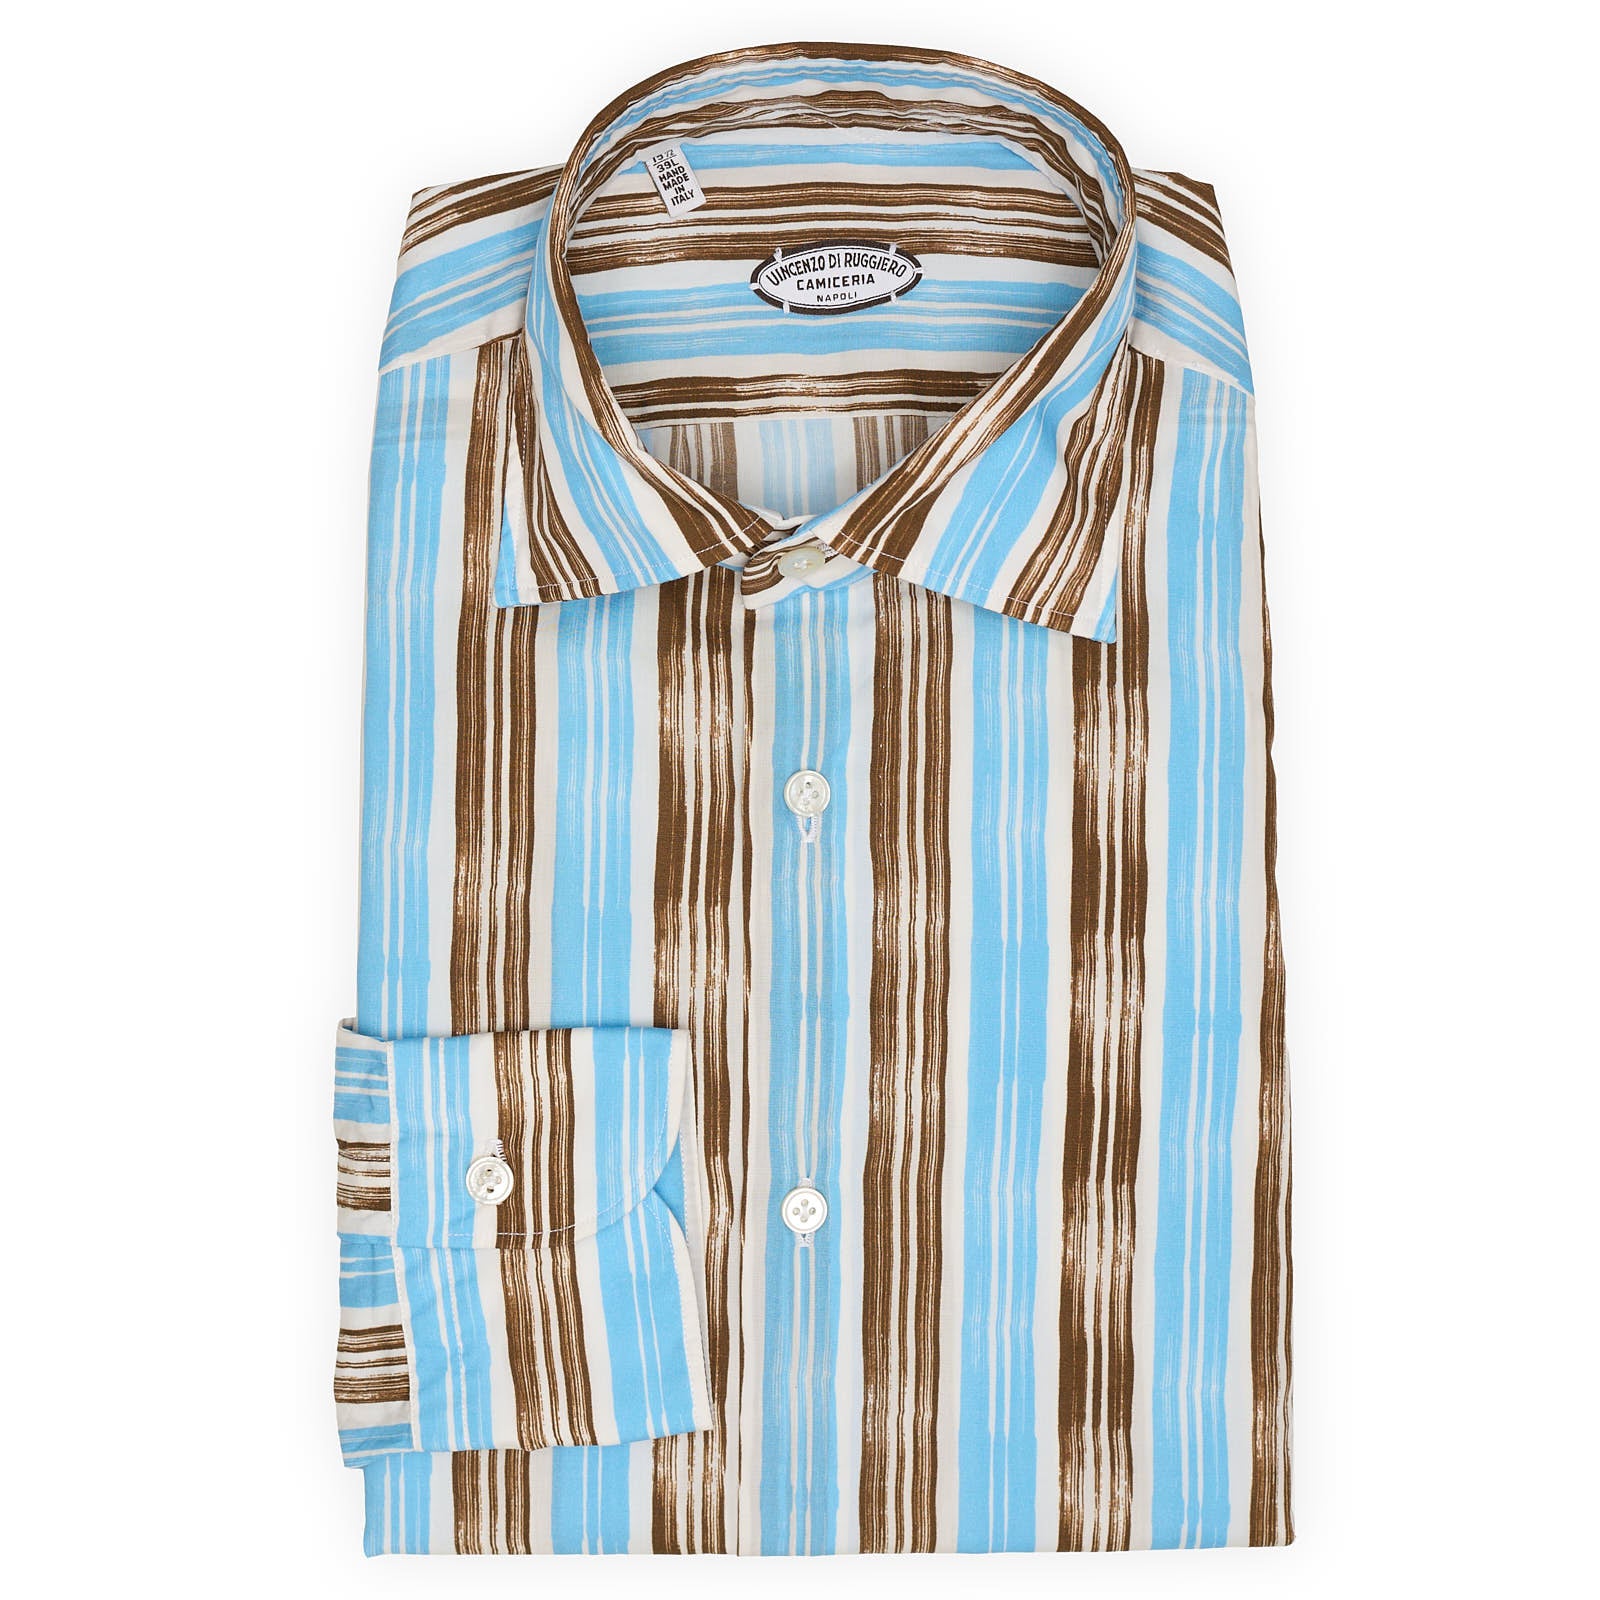 VINCENZO DI RUGGIERO Multicolor Striped Cotton Shirt EU 39 NEW US 15.5